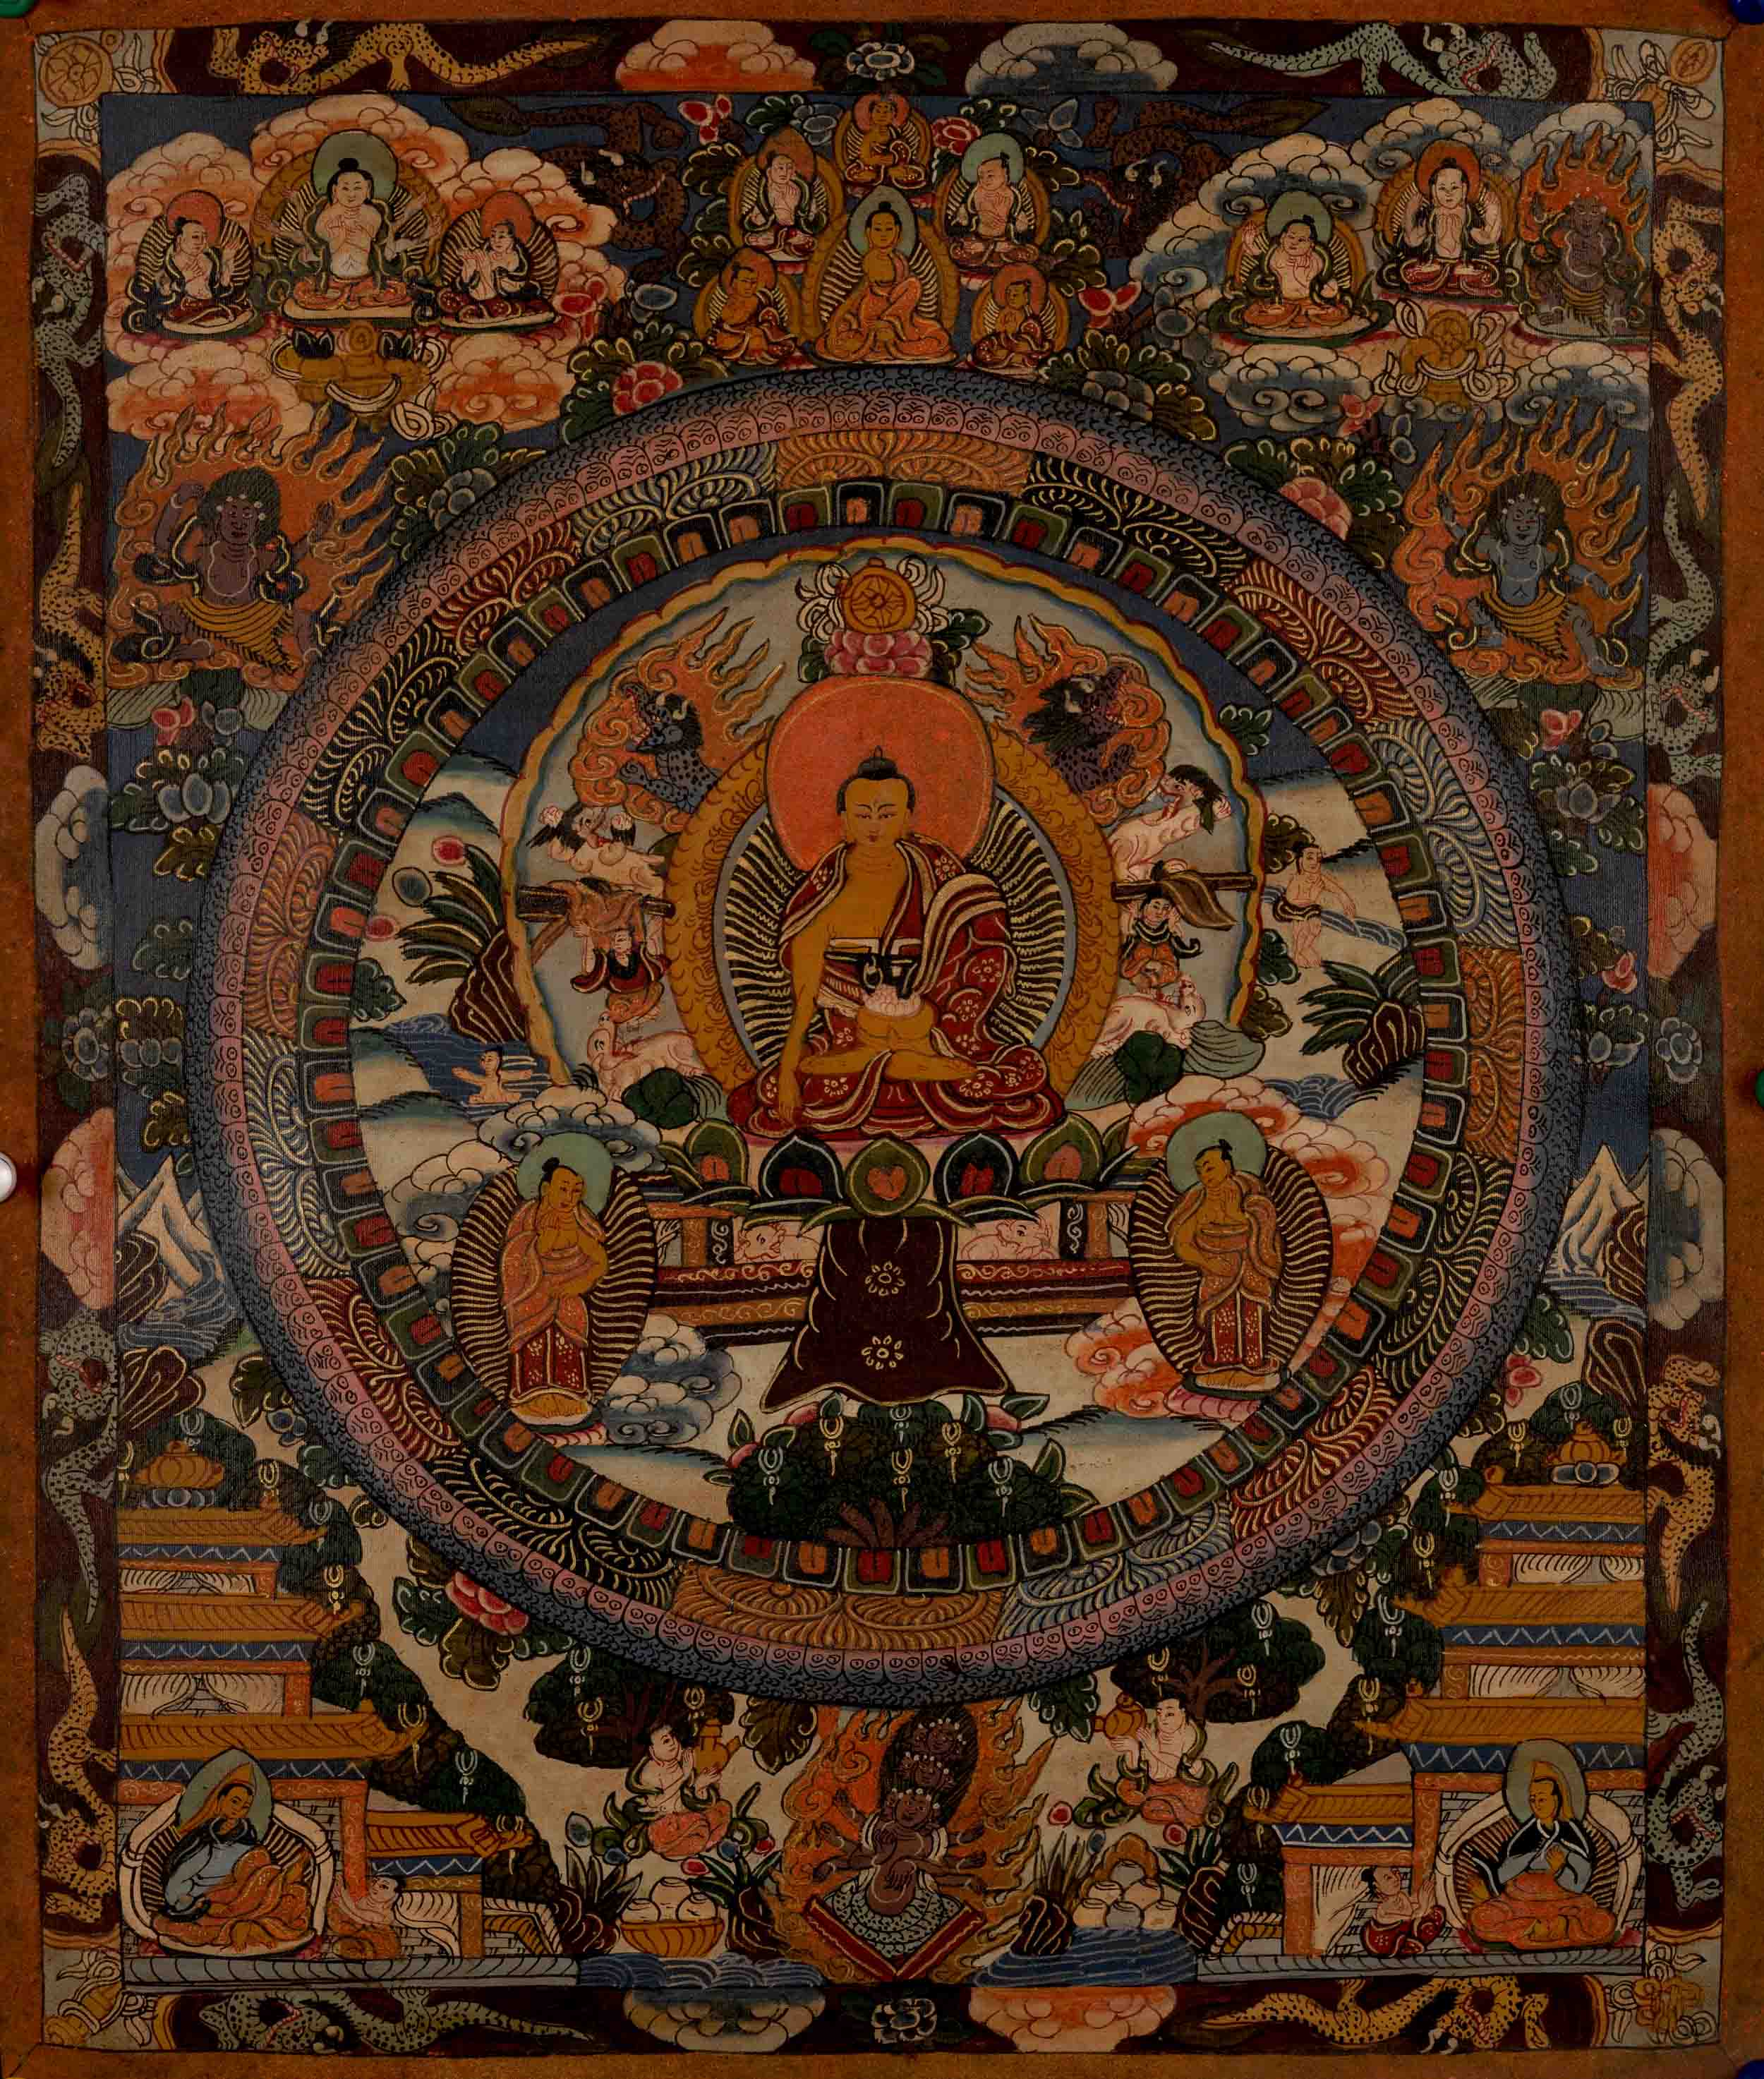 Shakyamuni Buddha Mandala | Buddha Shakyamuni Thangka | Mindfulness Meditation Object of Focus For Our Wellbeing | Wall Decoration Painting